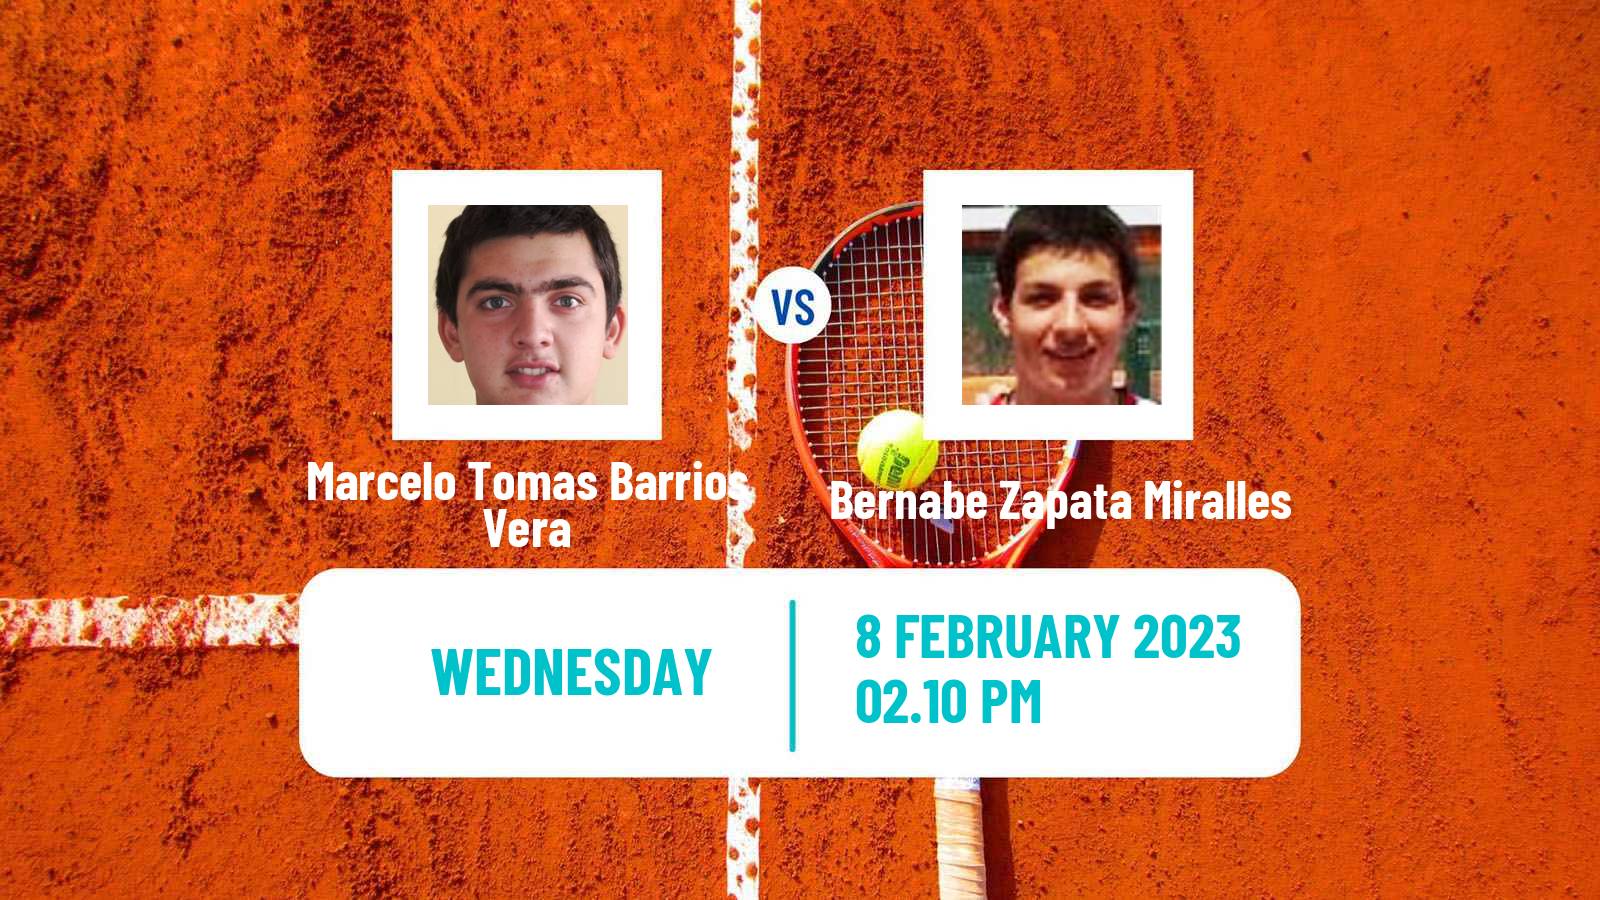 Tennis ATP Cordoba Marcelo Tomas Barrios Vera - Bernabe Zapata Miralles